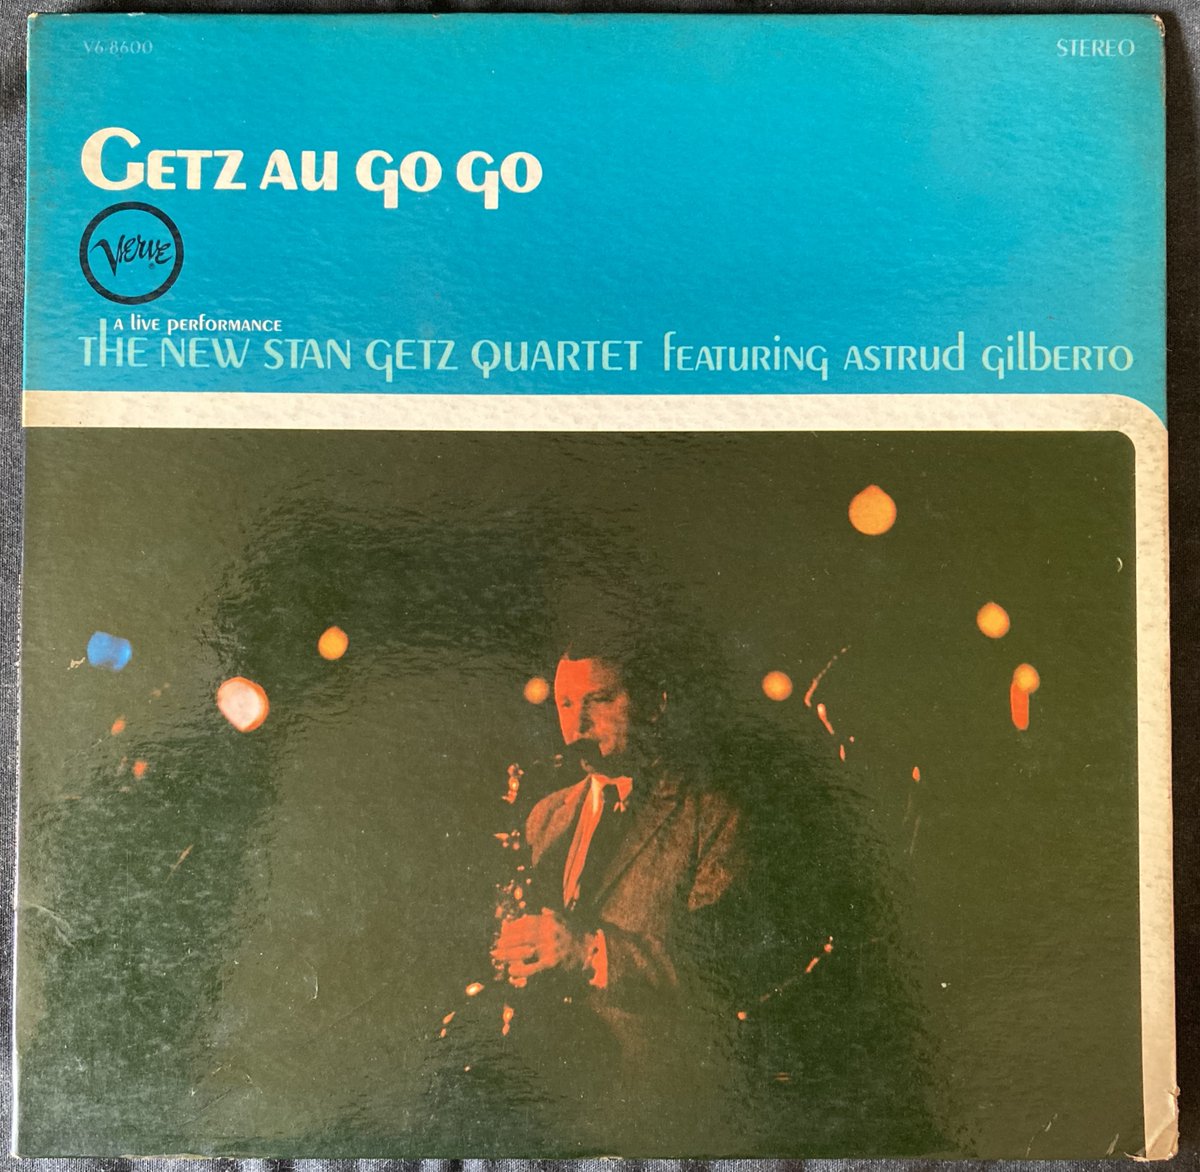 2月2日誕生日🎂スタン・ゲッツ🎷。
64年『ゲッツ・オー・ゴー・ゴー』の
「コルコヴァード」。
アストラッド・ジルベルト🎤、
ケニー・バレル🎸。

＃StanGetz　＃AstrudGilberto
Corcovado
＃KennyBurrell
(Live At Café Au Go-Go,1964) · 
Getz Au Go Go
youtu.be/9ZlyJhm967Y?si